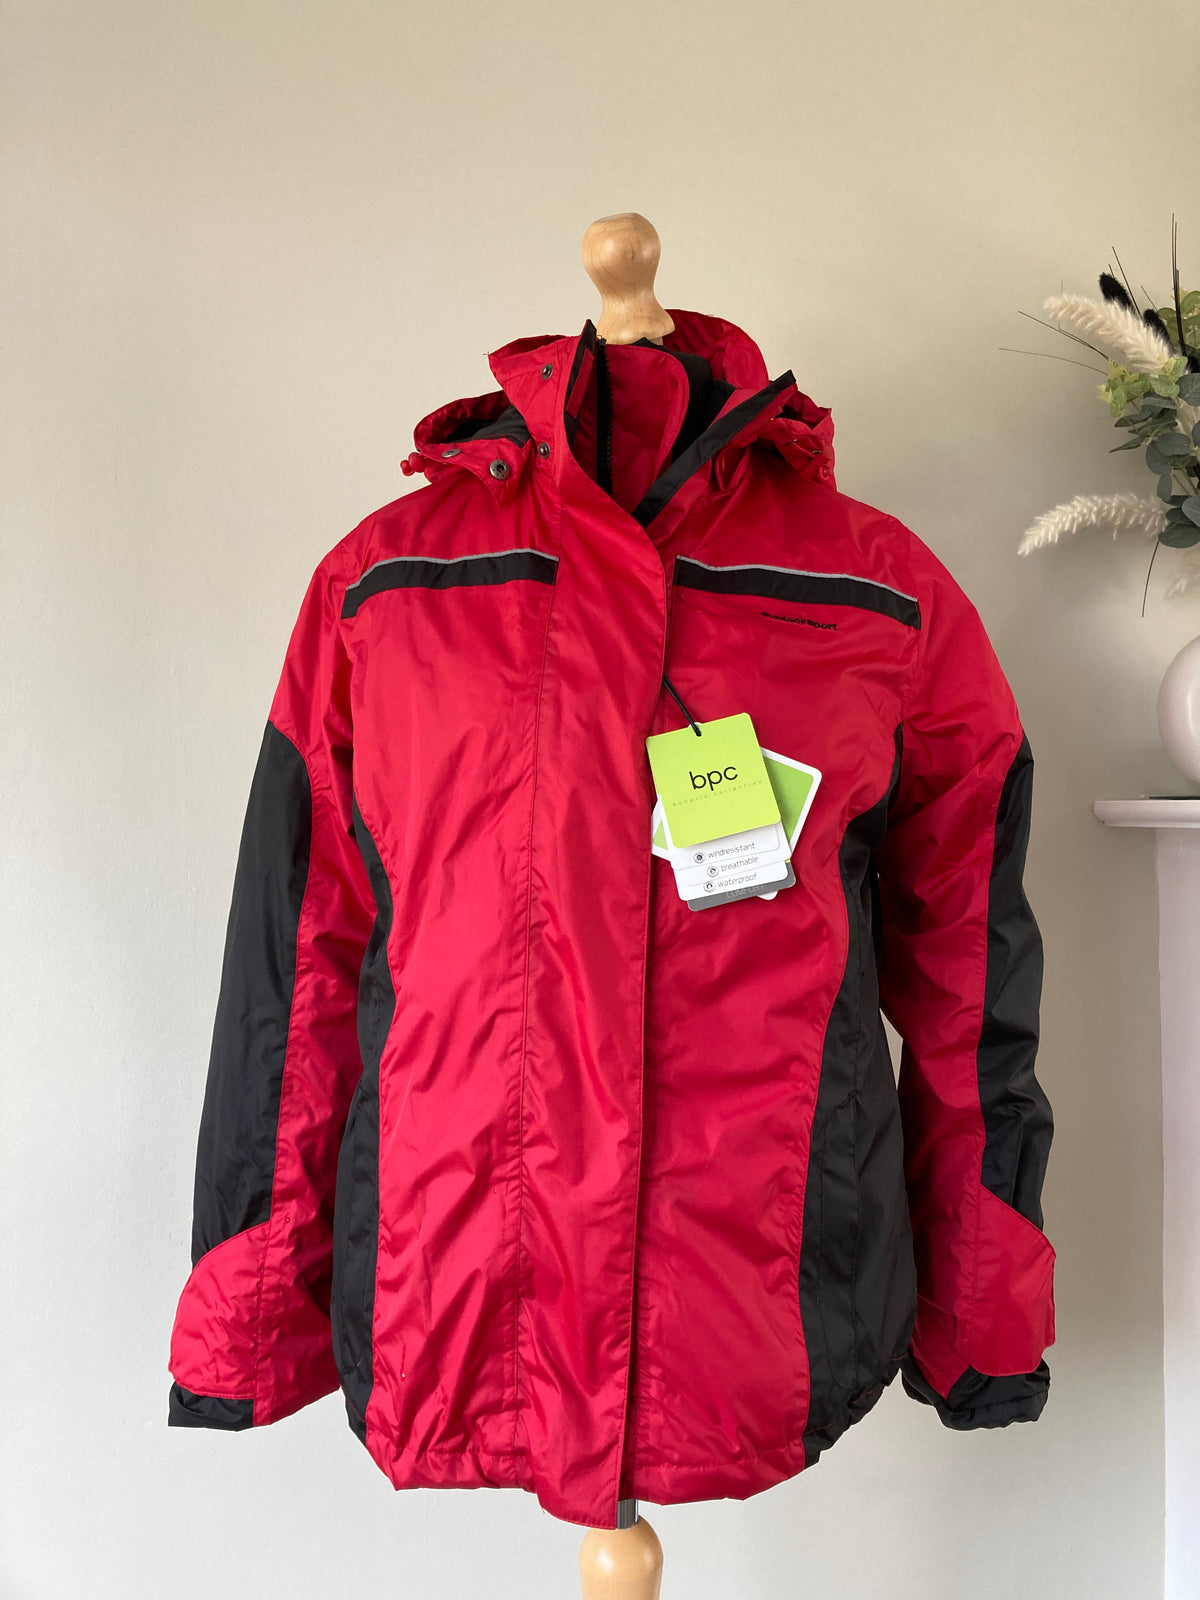 2-in 1 jacket by BONPRIX -Size 14